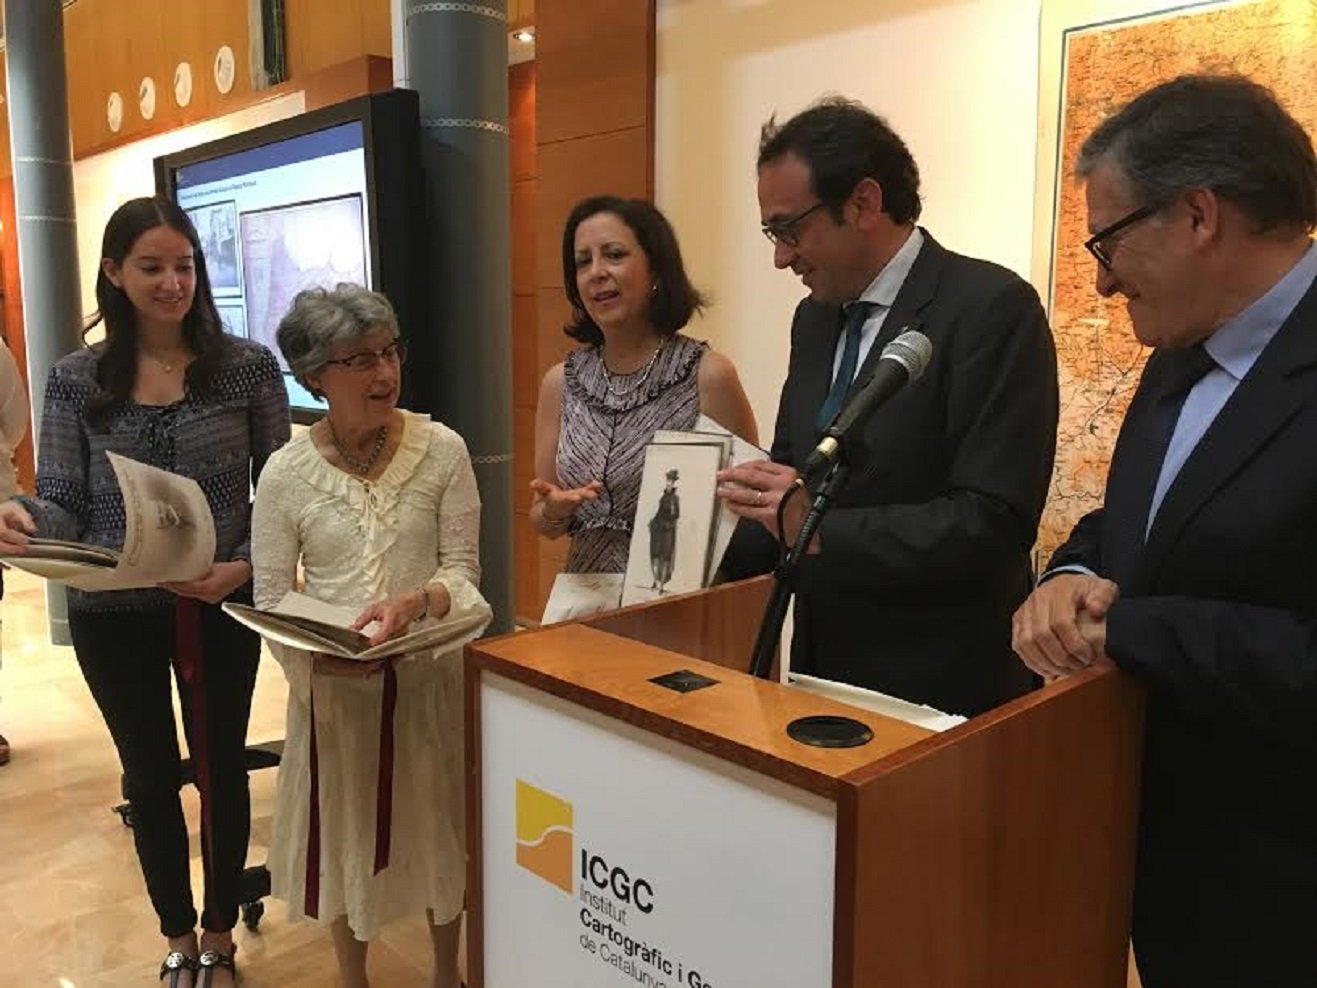 Els Reparaz donen l'arxiu familiar a Catalunya després que l'Estat els impedís recuperar-lo